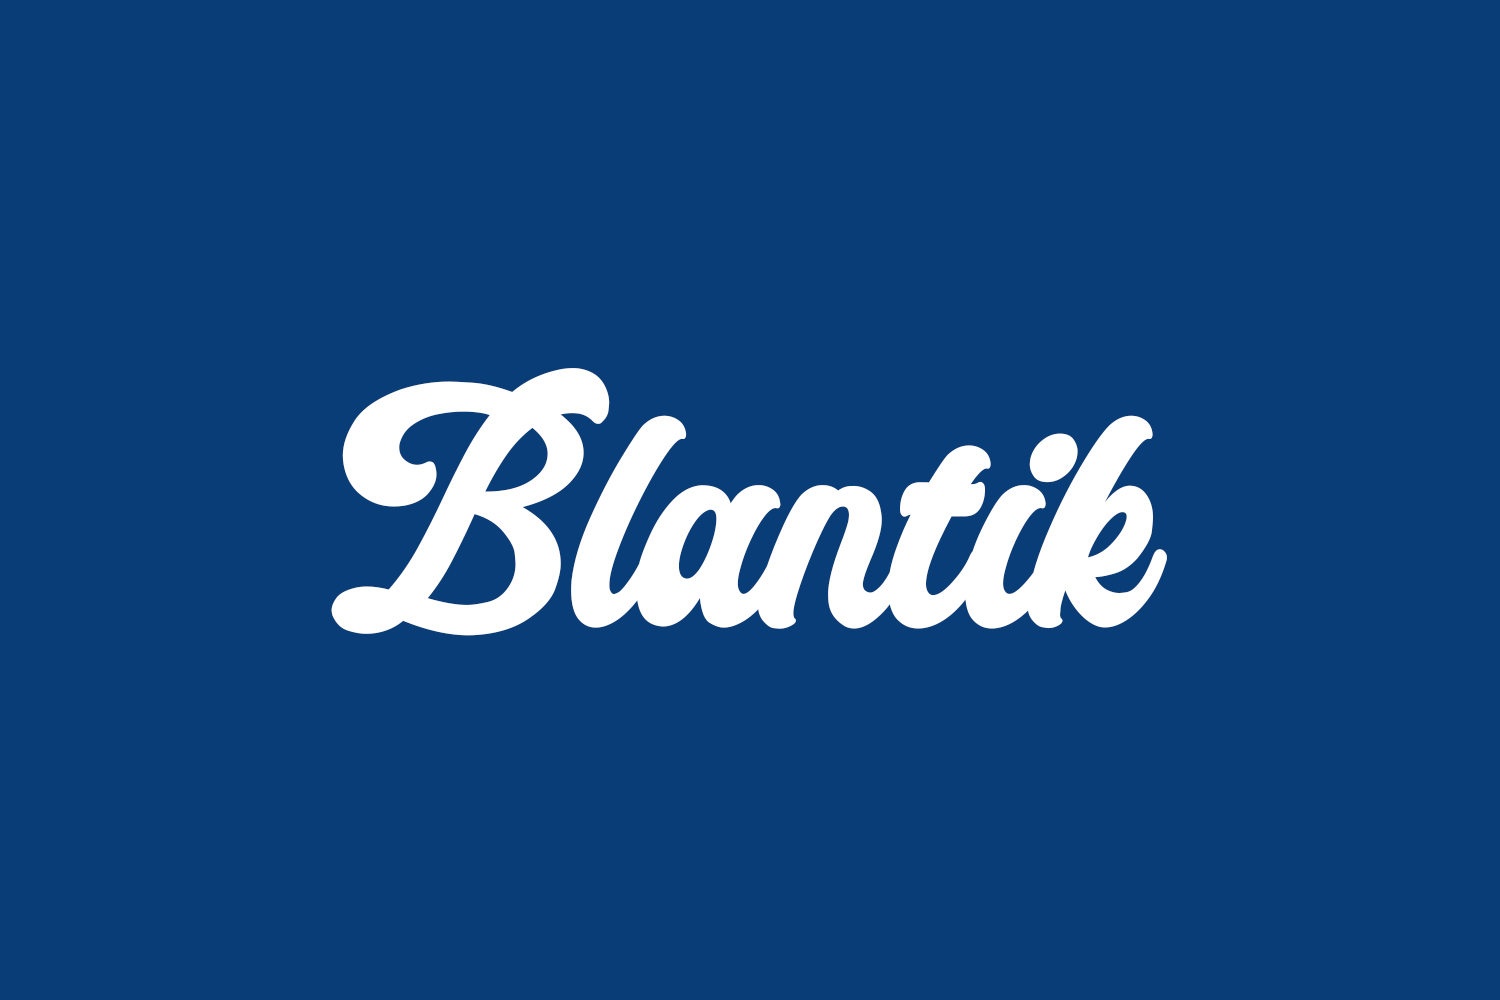 Blantik Free Font